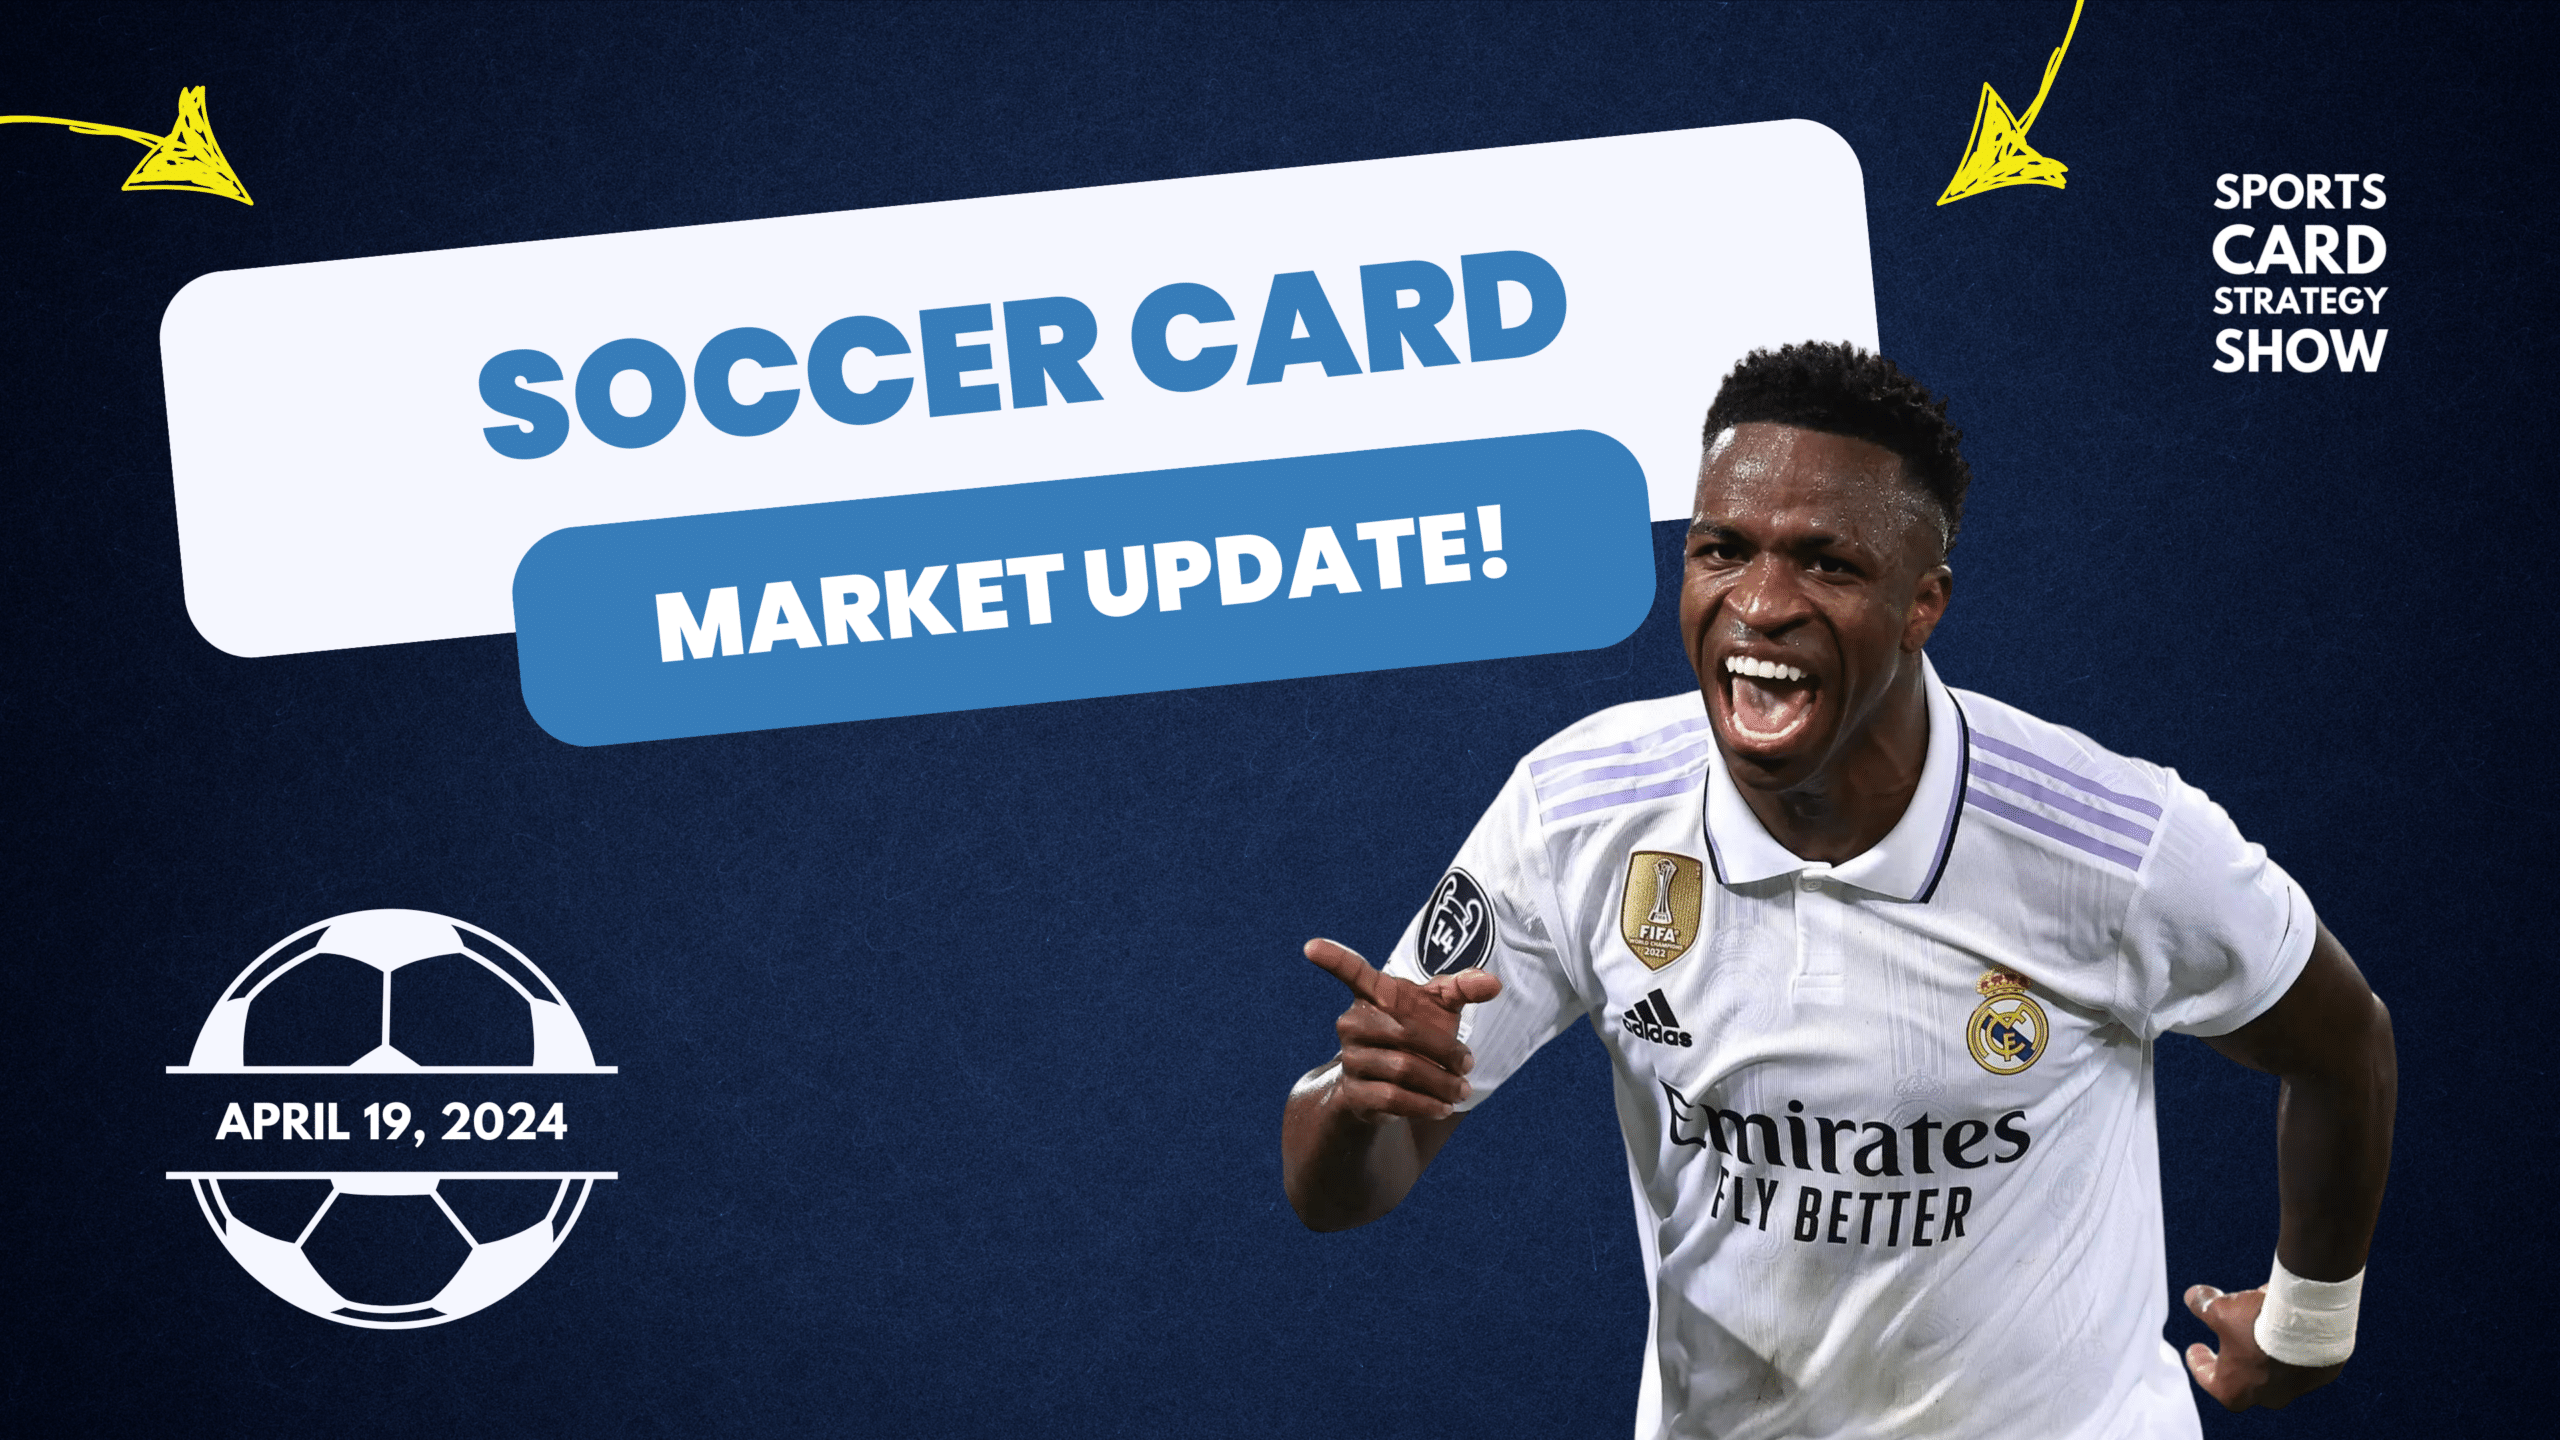 Soccer Card Market Update April 19